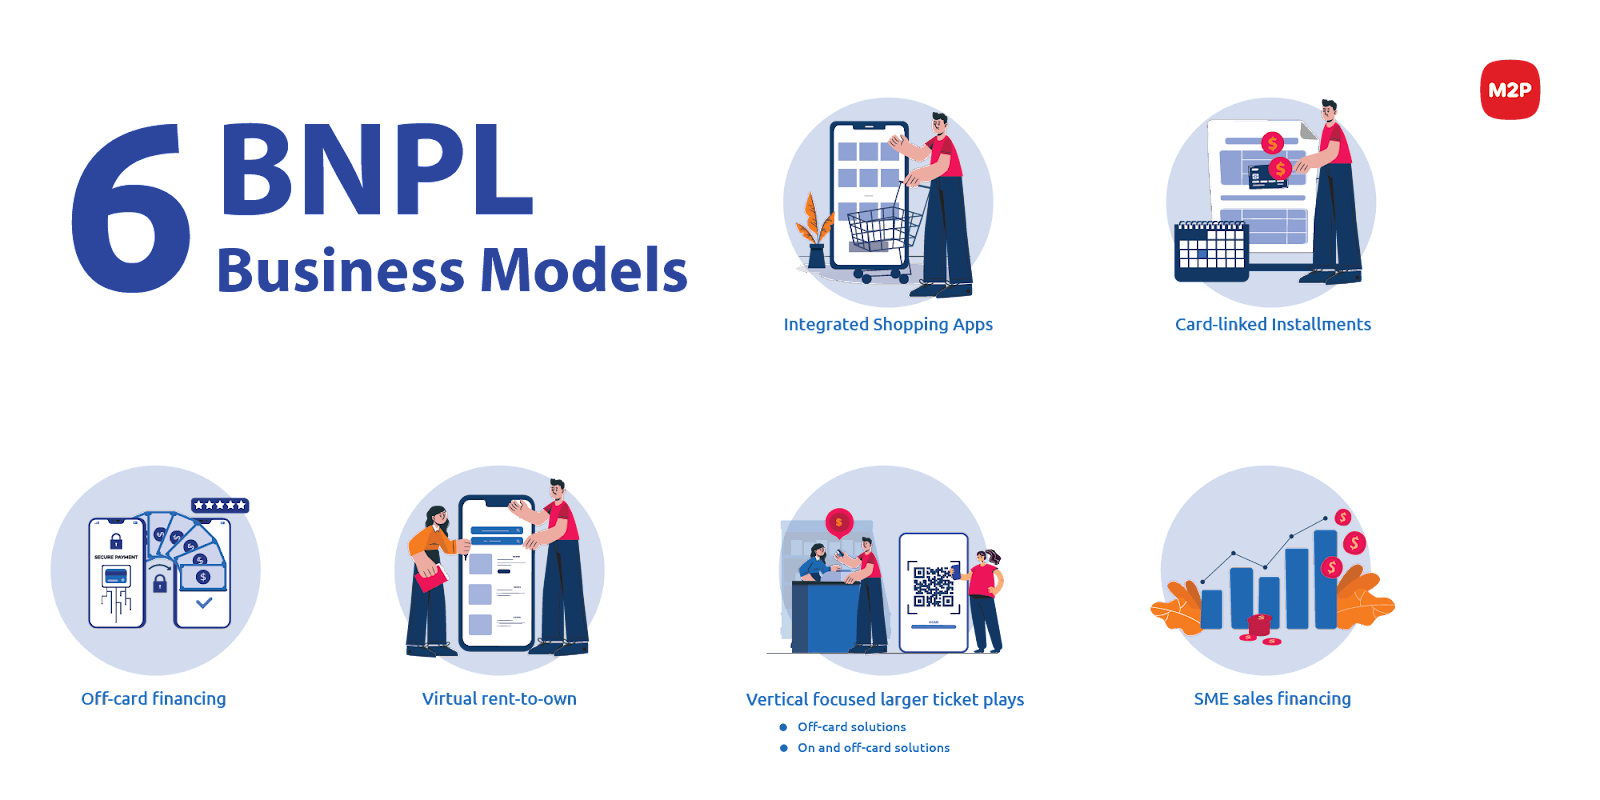 BNPL models